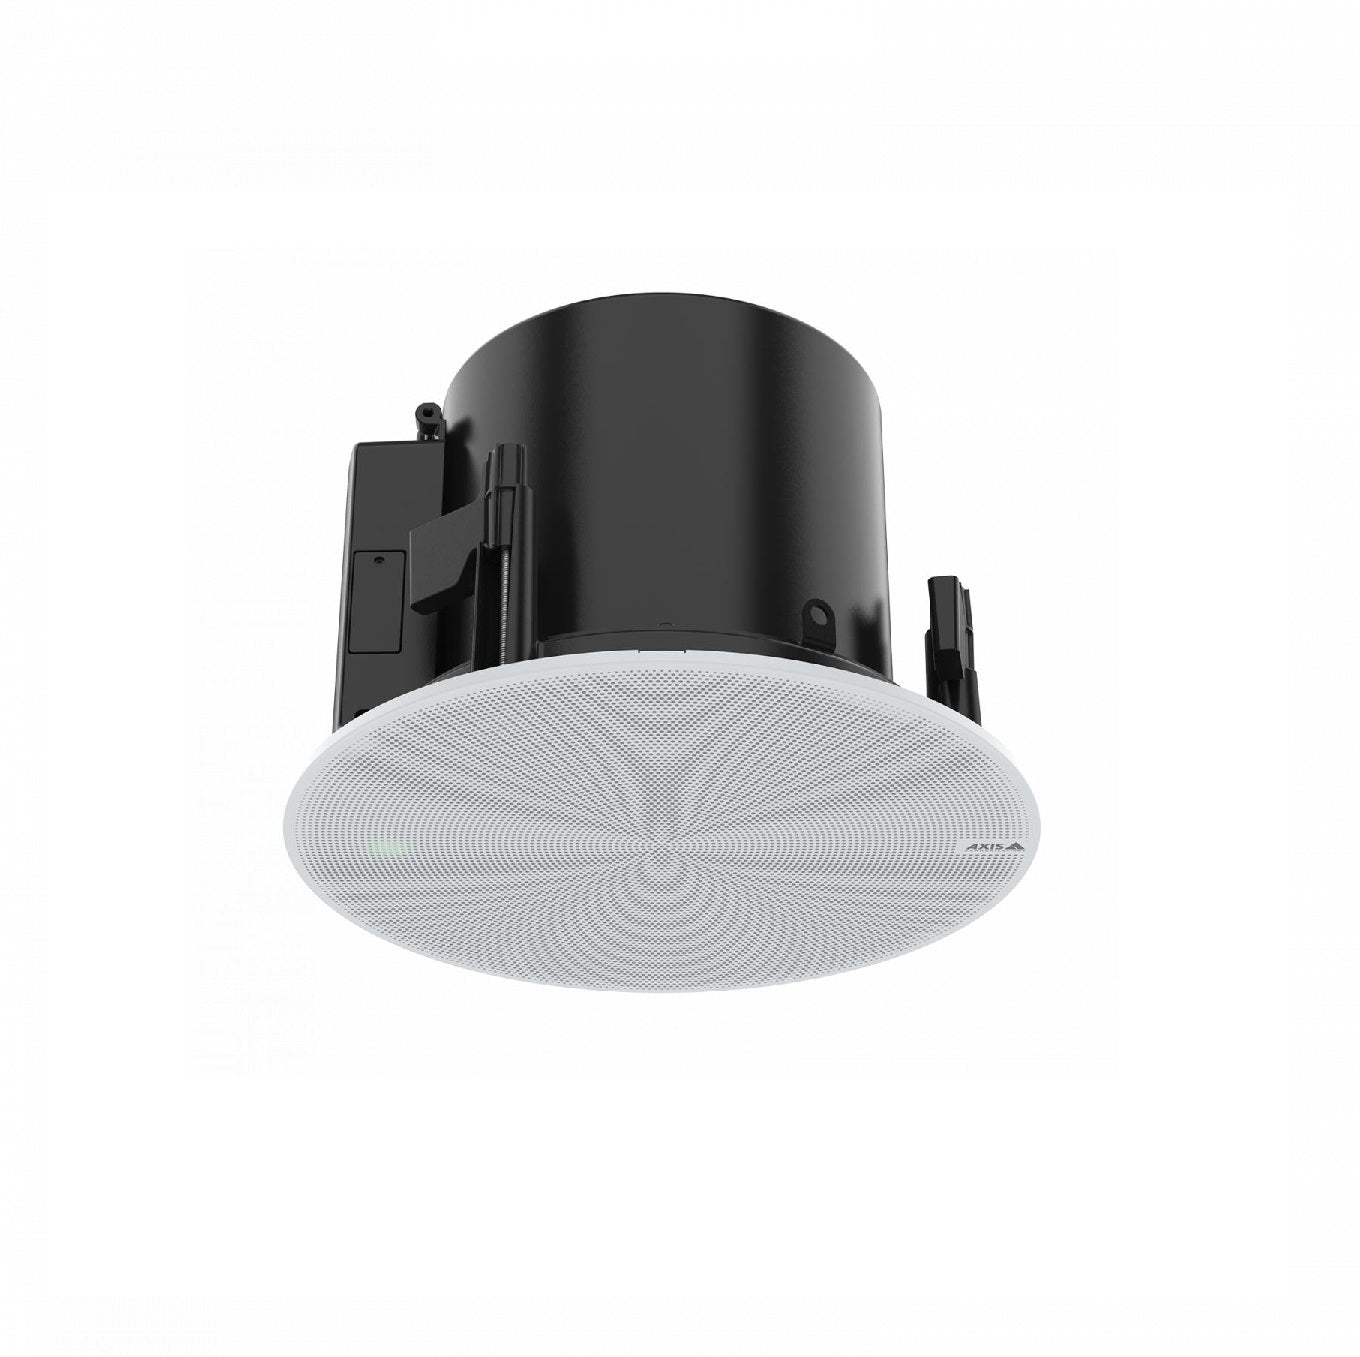 AXIS C1211-E Network Ceiling Speaker